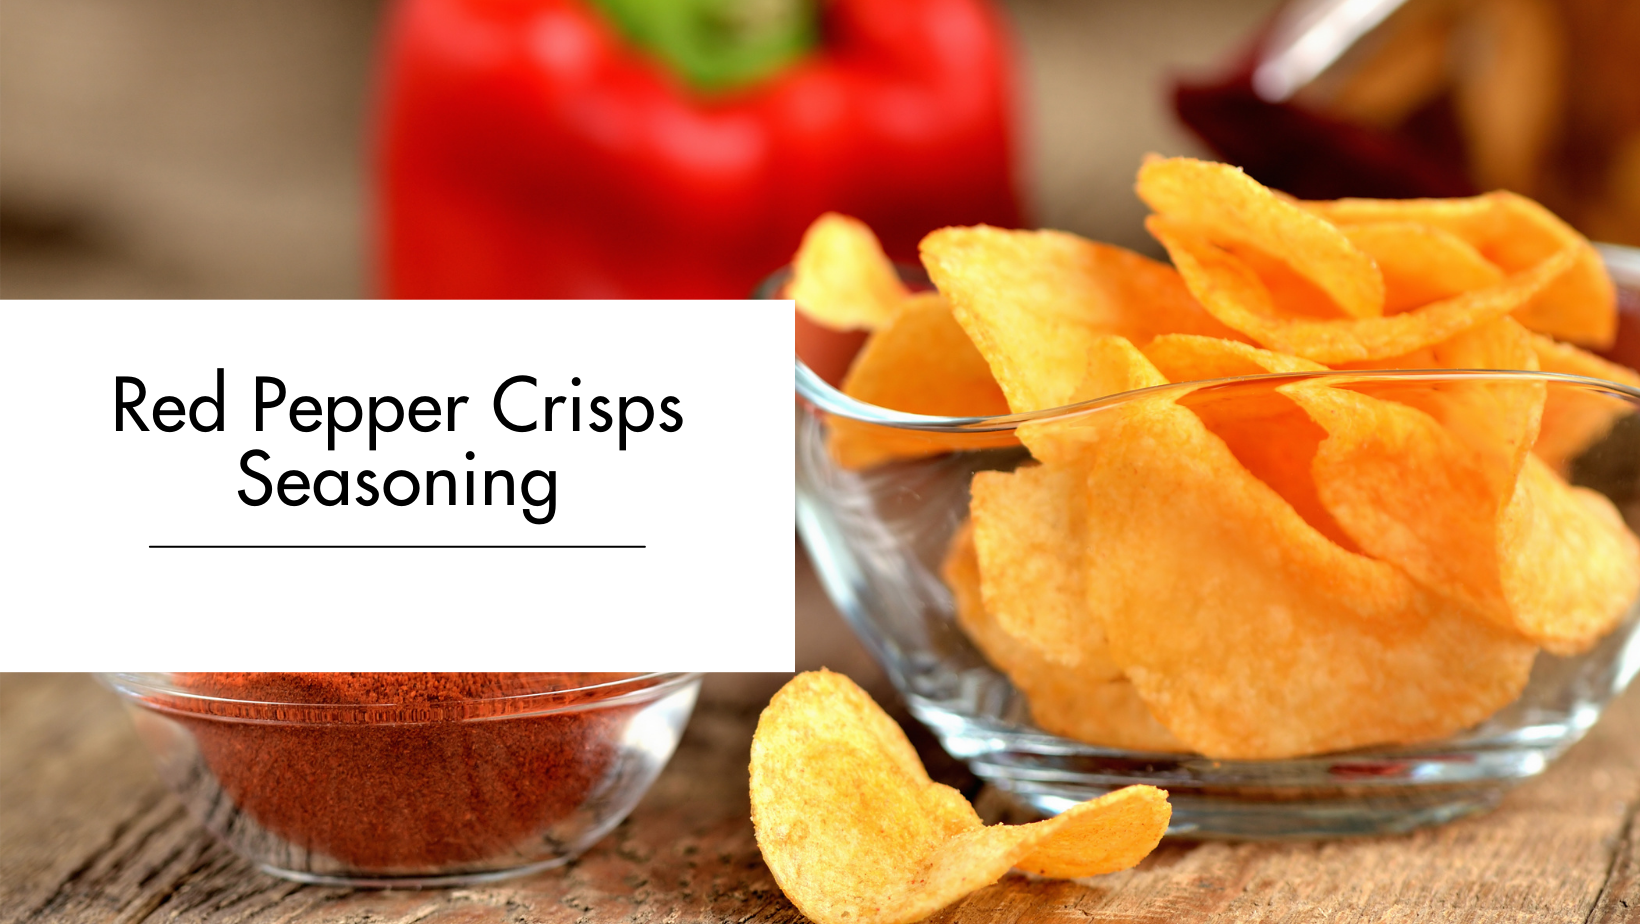 Red Pepper Crisps Seasoning